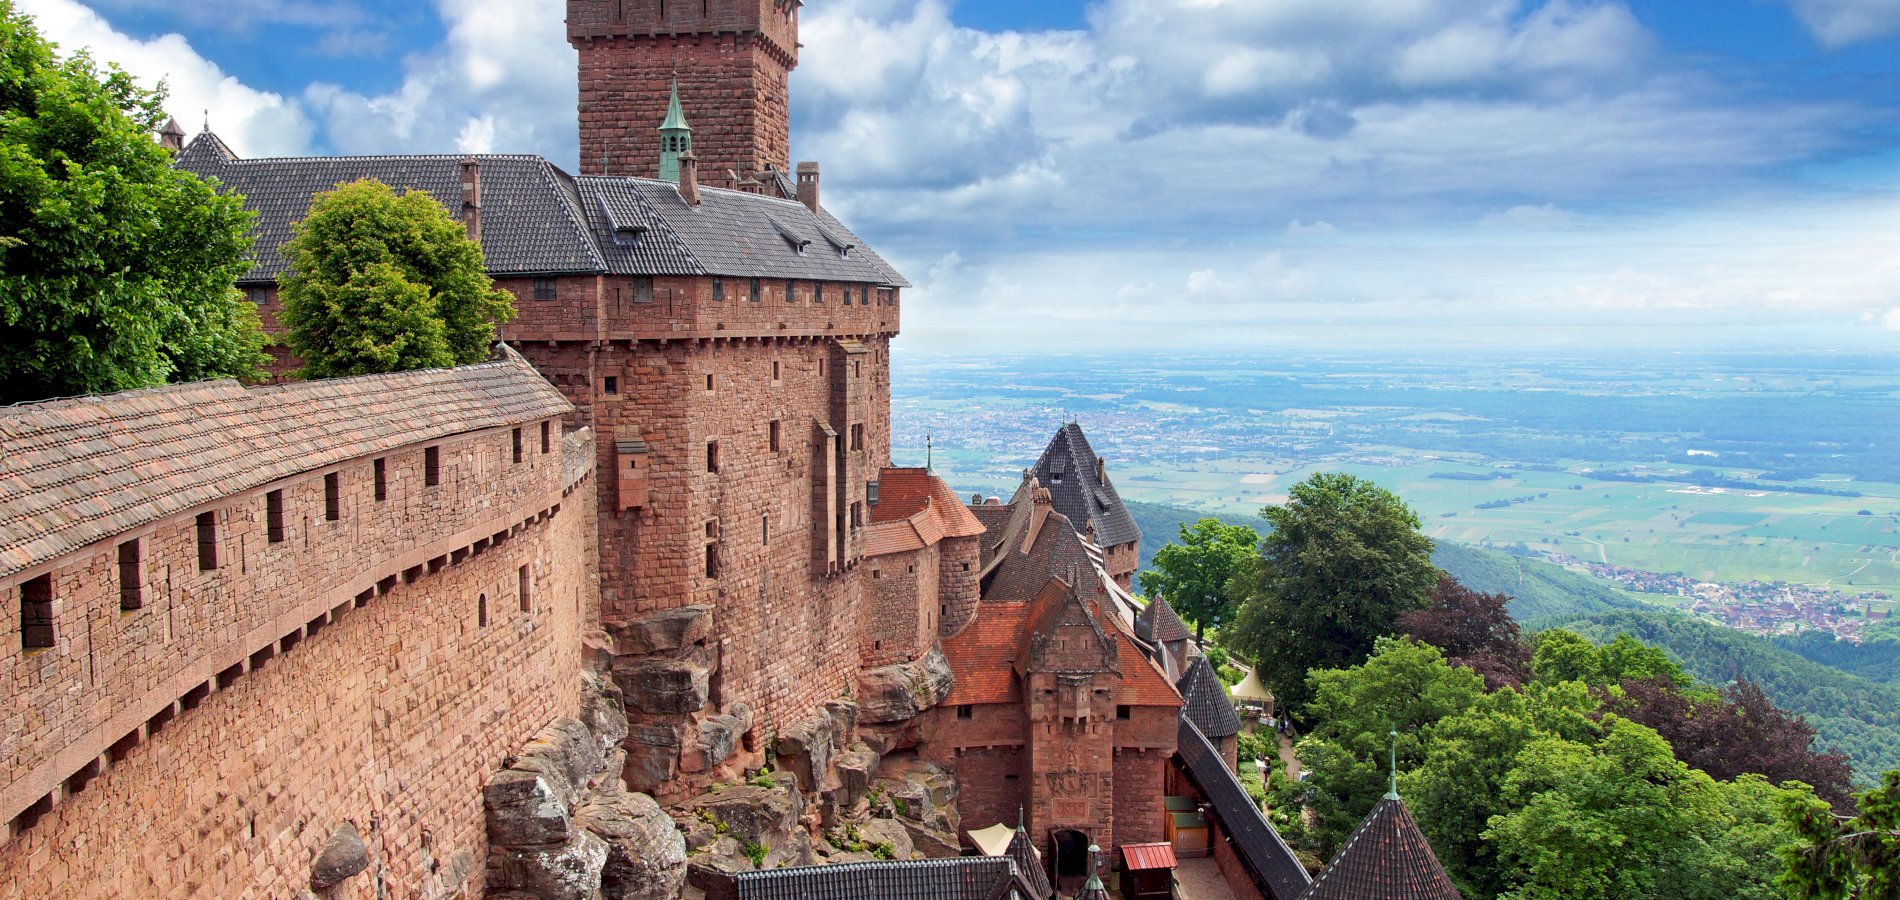 Ophorus Tours - A Day Trip From Colmar to Eguisheim, Riquewihr & Haut Koenigsbourg Castle